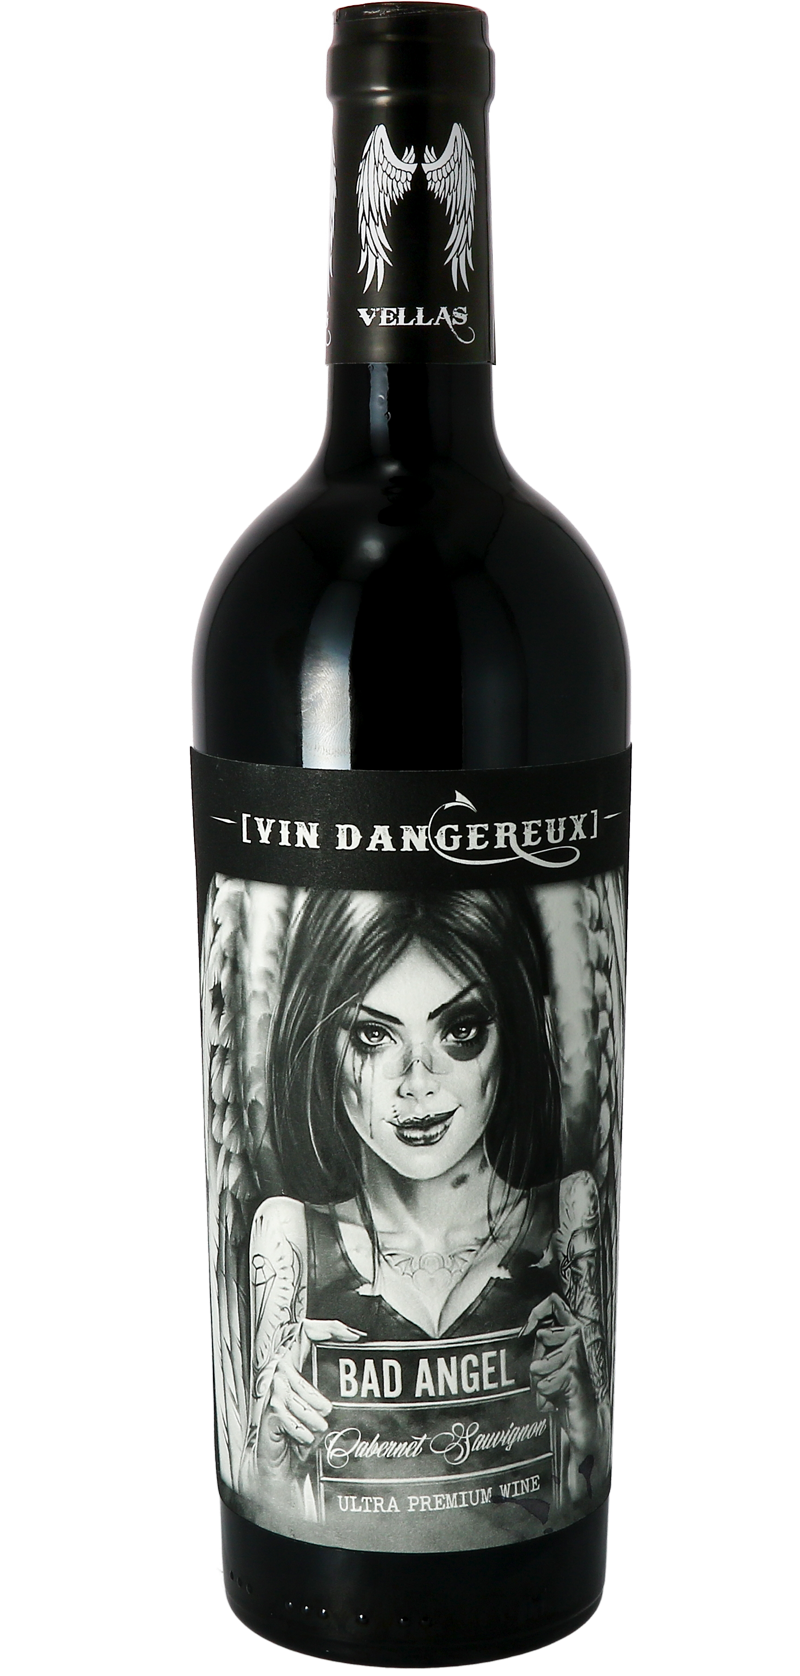 Bad Angel - Vin Dangereux - Cabernet-Sauvignon - Vin Rouge  - 1